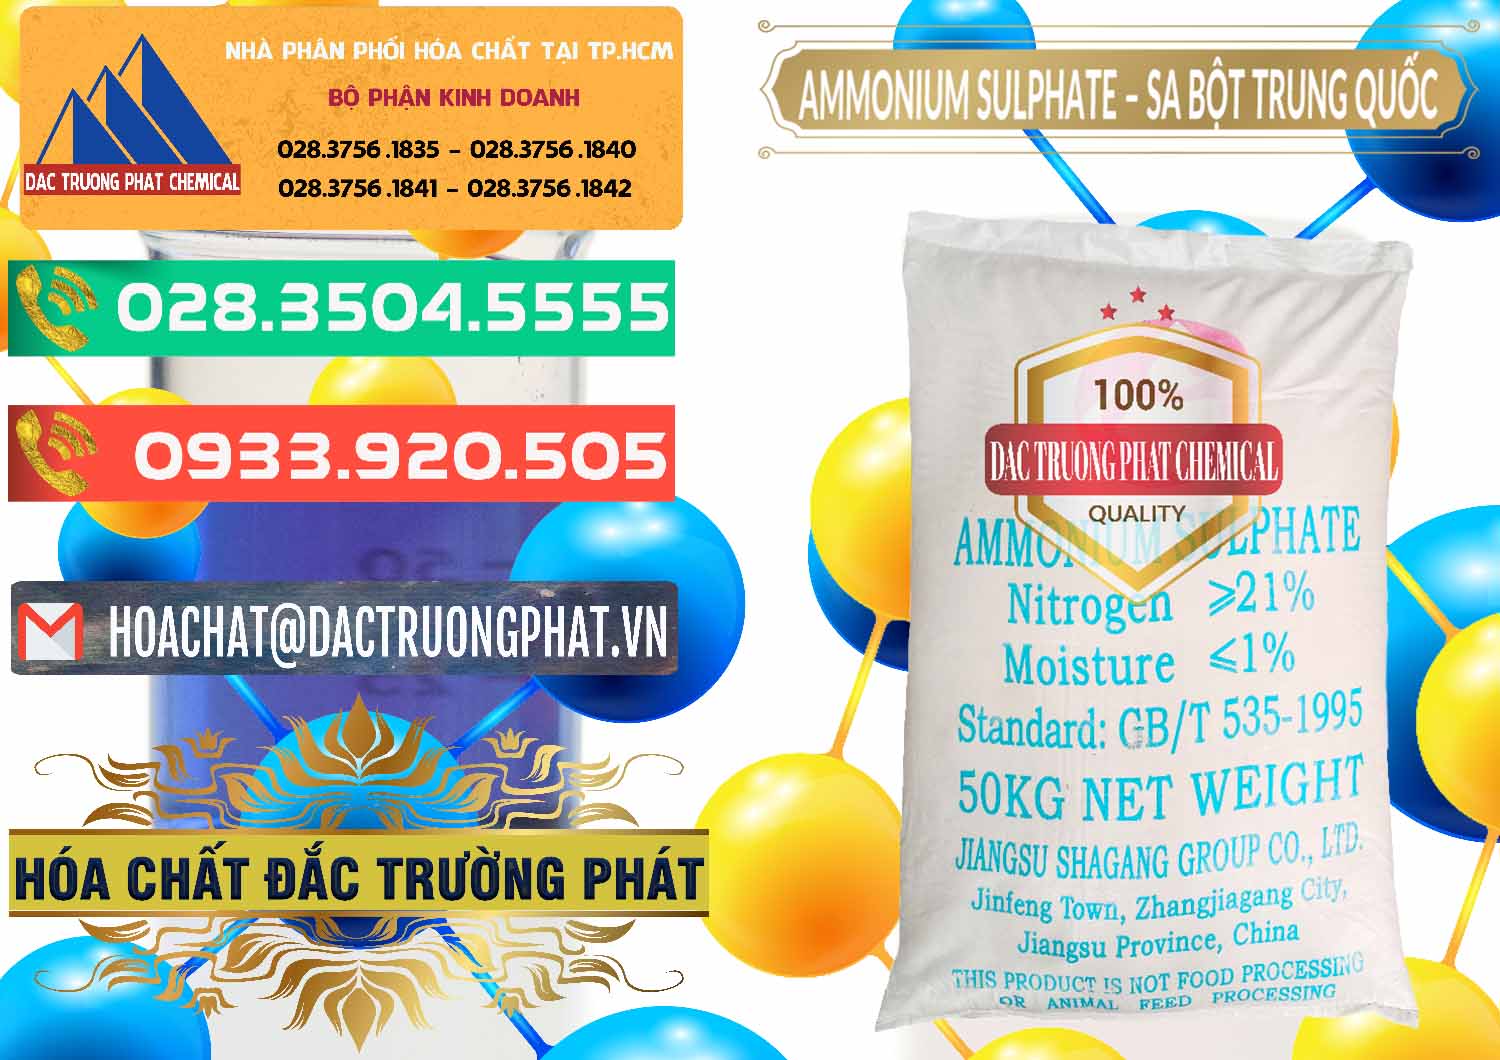 Cty chuyên cung cấp - bán Ammonium Sulphate – Phân Sa Trung Quốc China - 0024 - Nơi chuyên nhập khẩu - phân phối hóa chất tại TP.HCM - congtyhoachat.com.vn